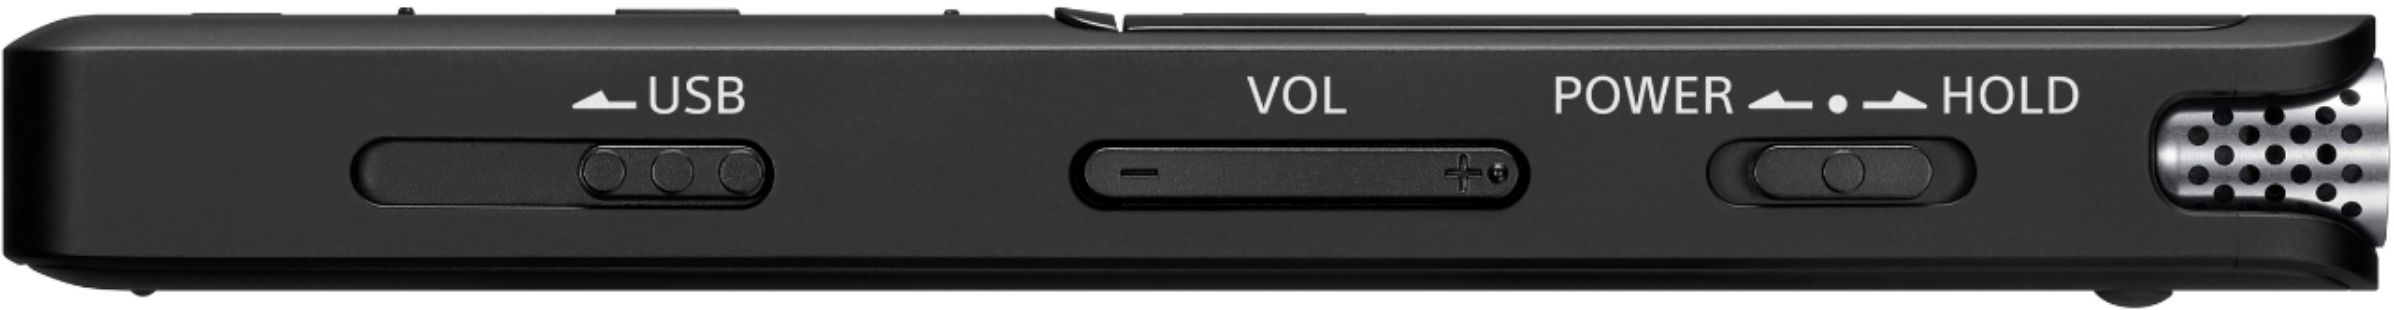 Ripley - SONY GRABADORA DE VOZ DIGITAL ICD UX570 PORTÁTIL CON USB